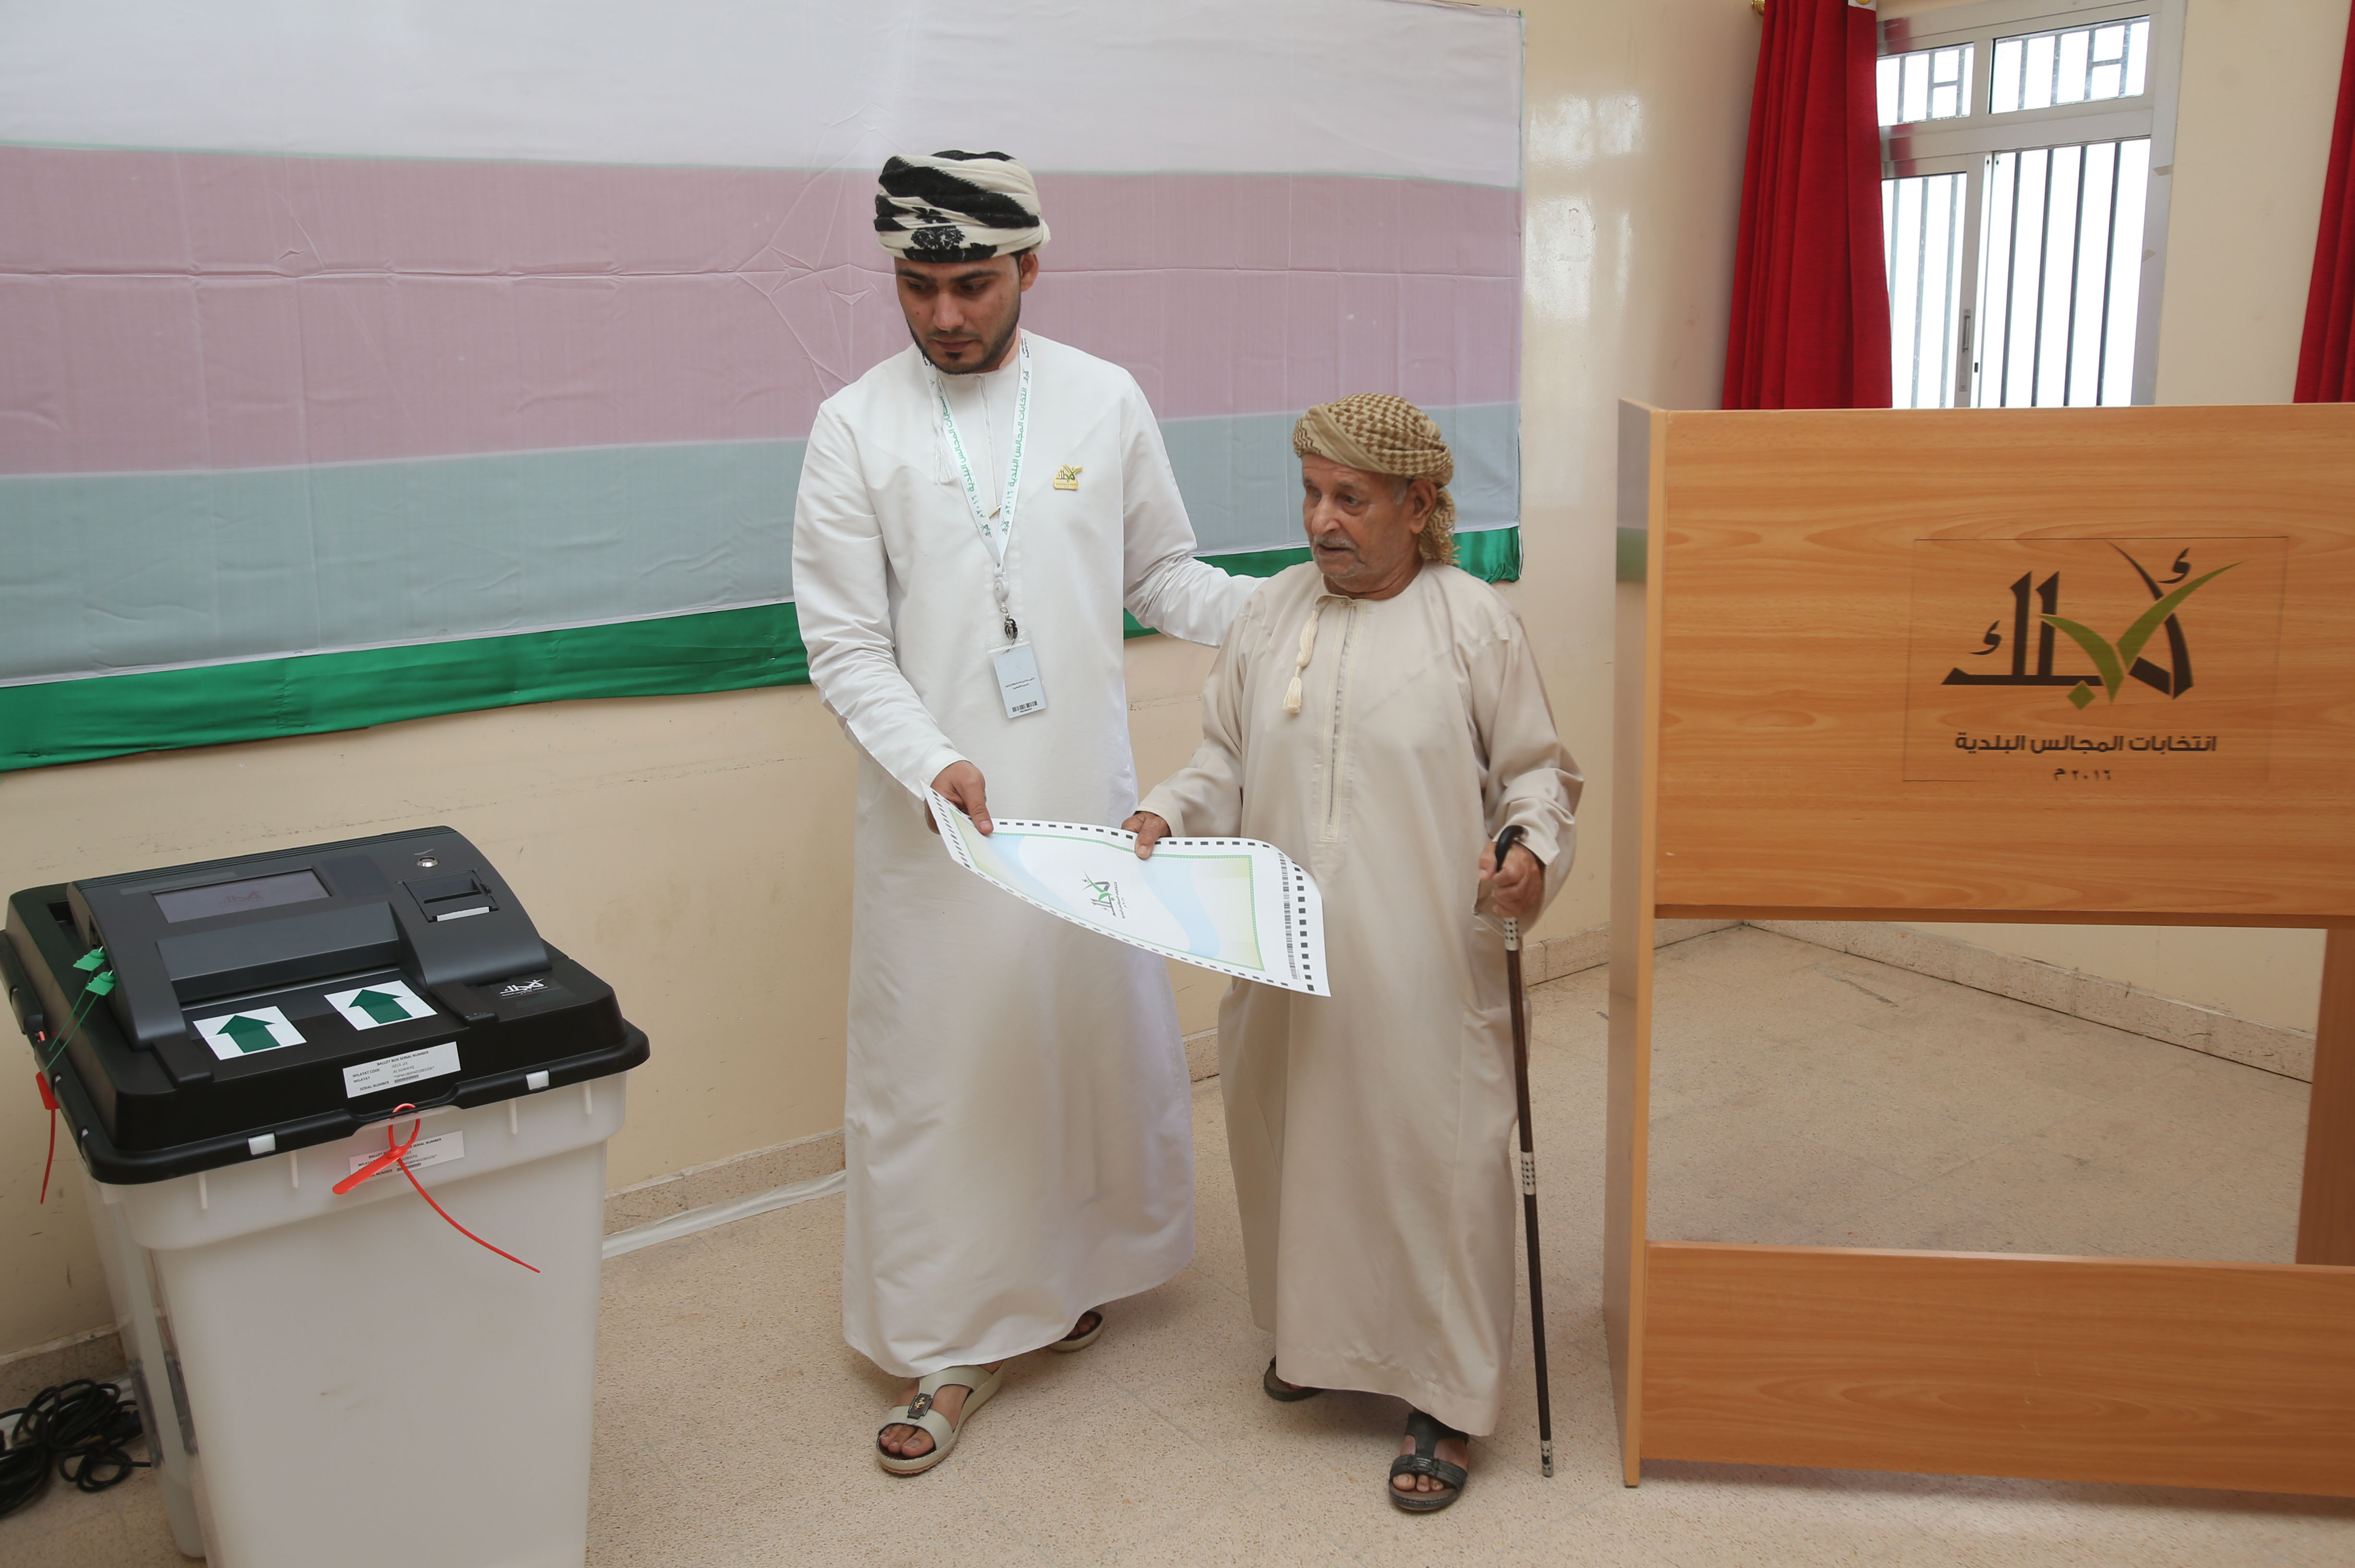   مواطن عمانى حرص على التصويت فى الانتخابات      